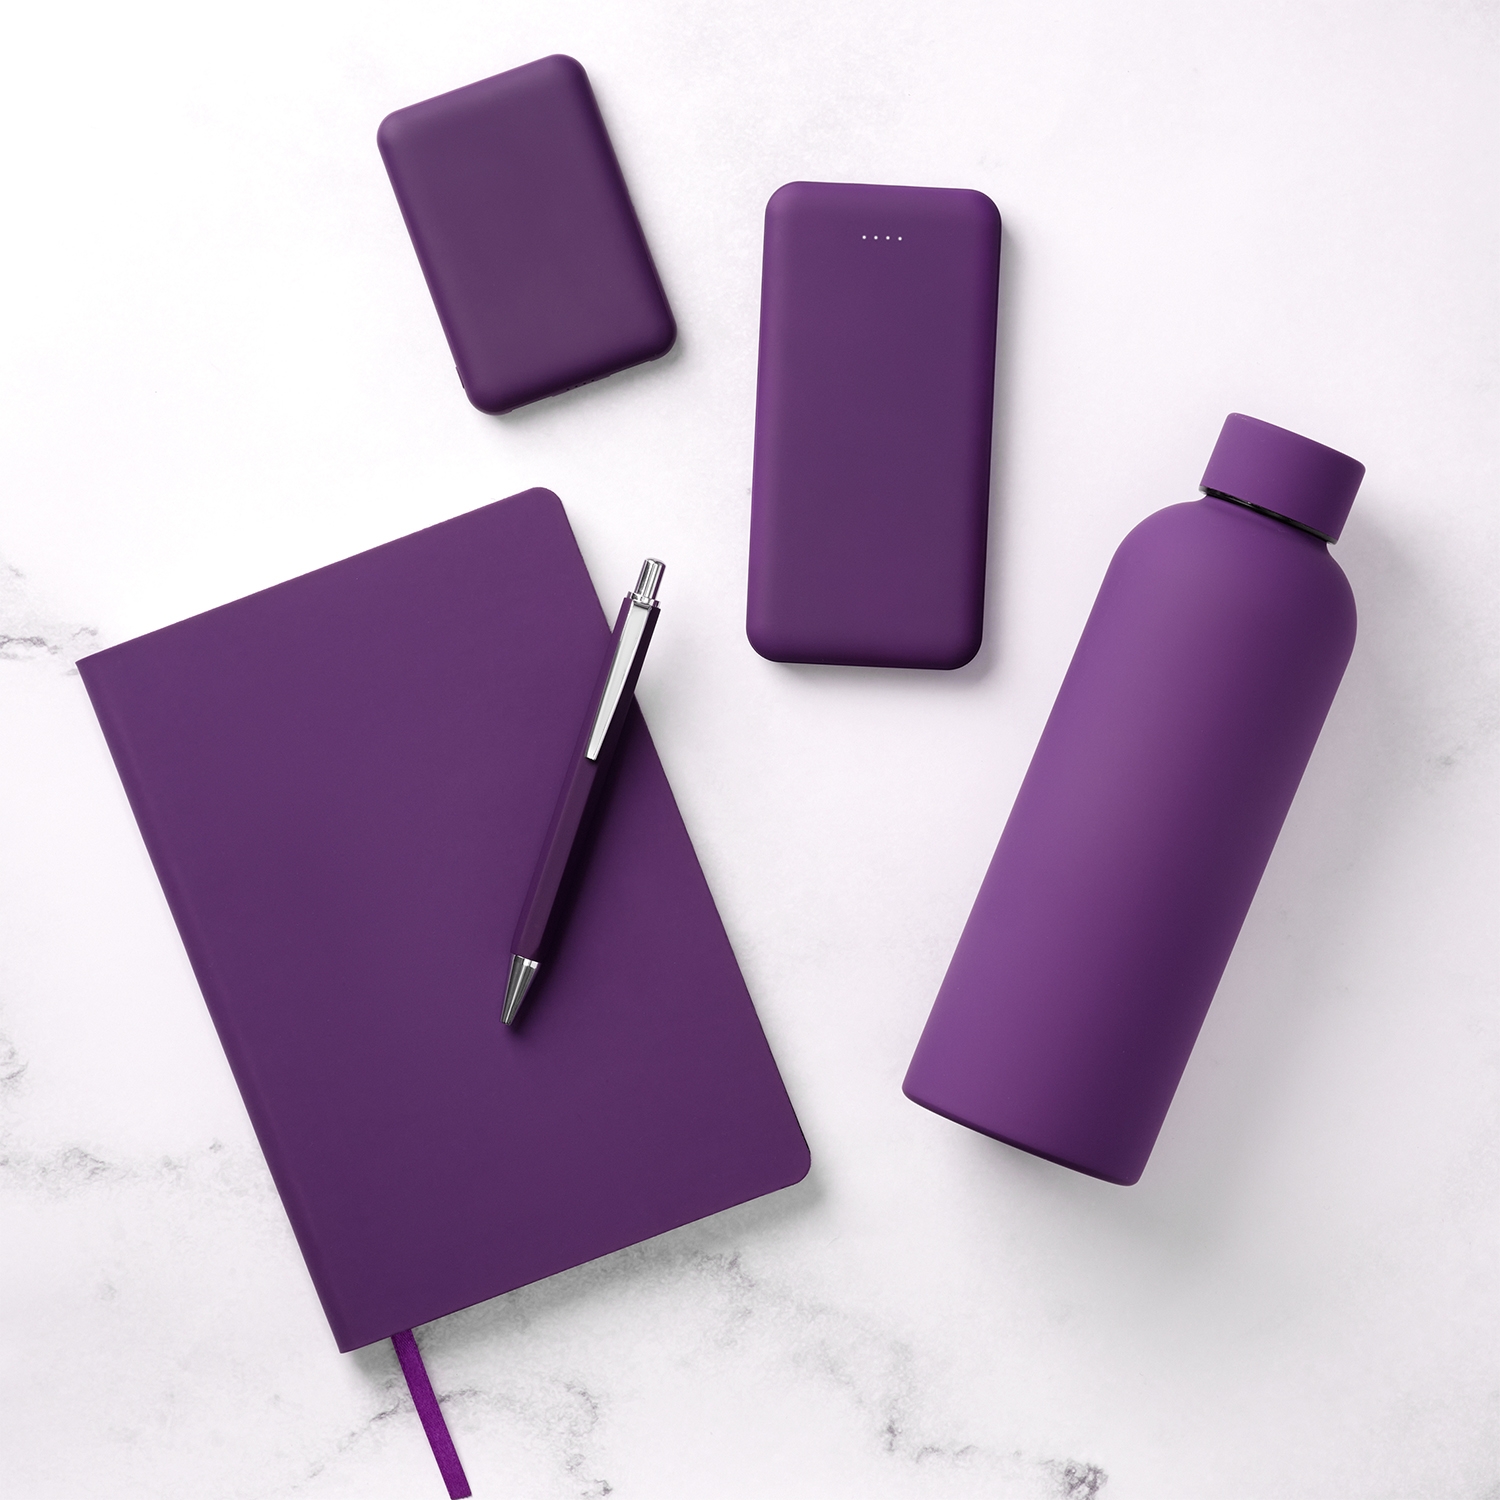 Ежедневник Spark недатированный, фиолетовый (без упаковки, без стикера), фиолетовый